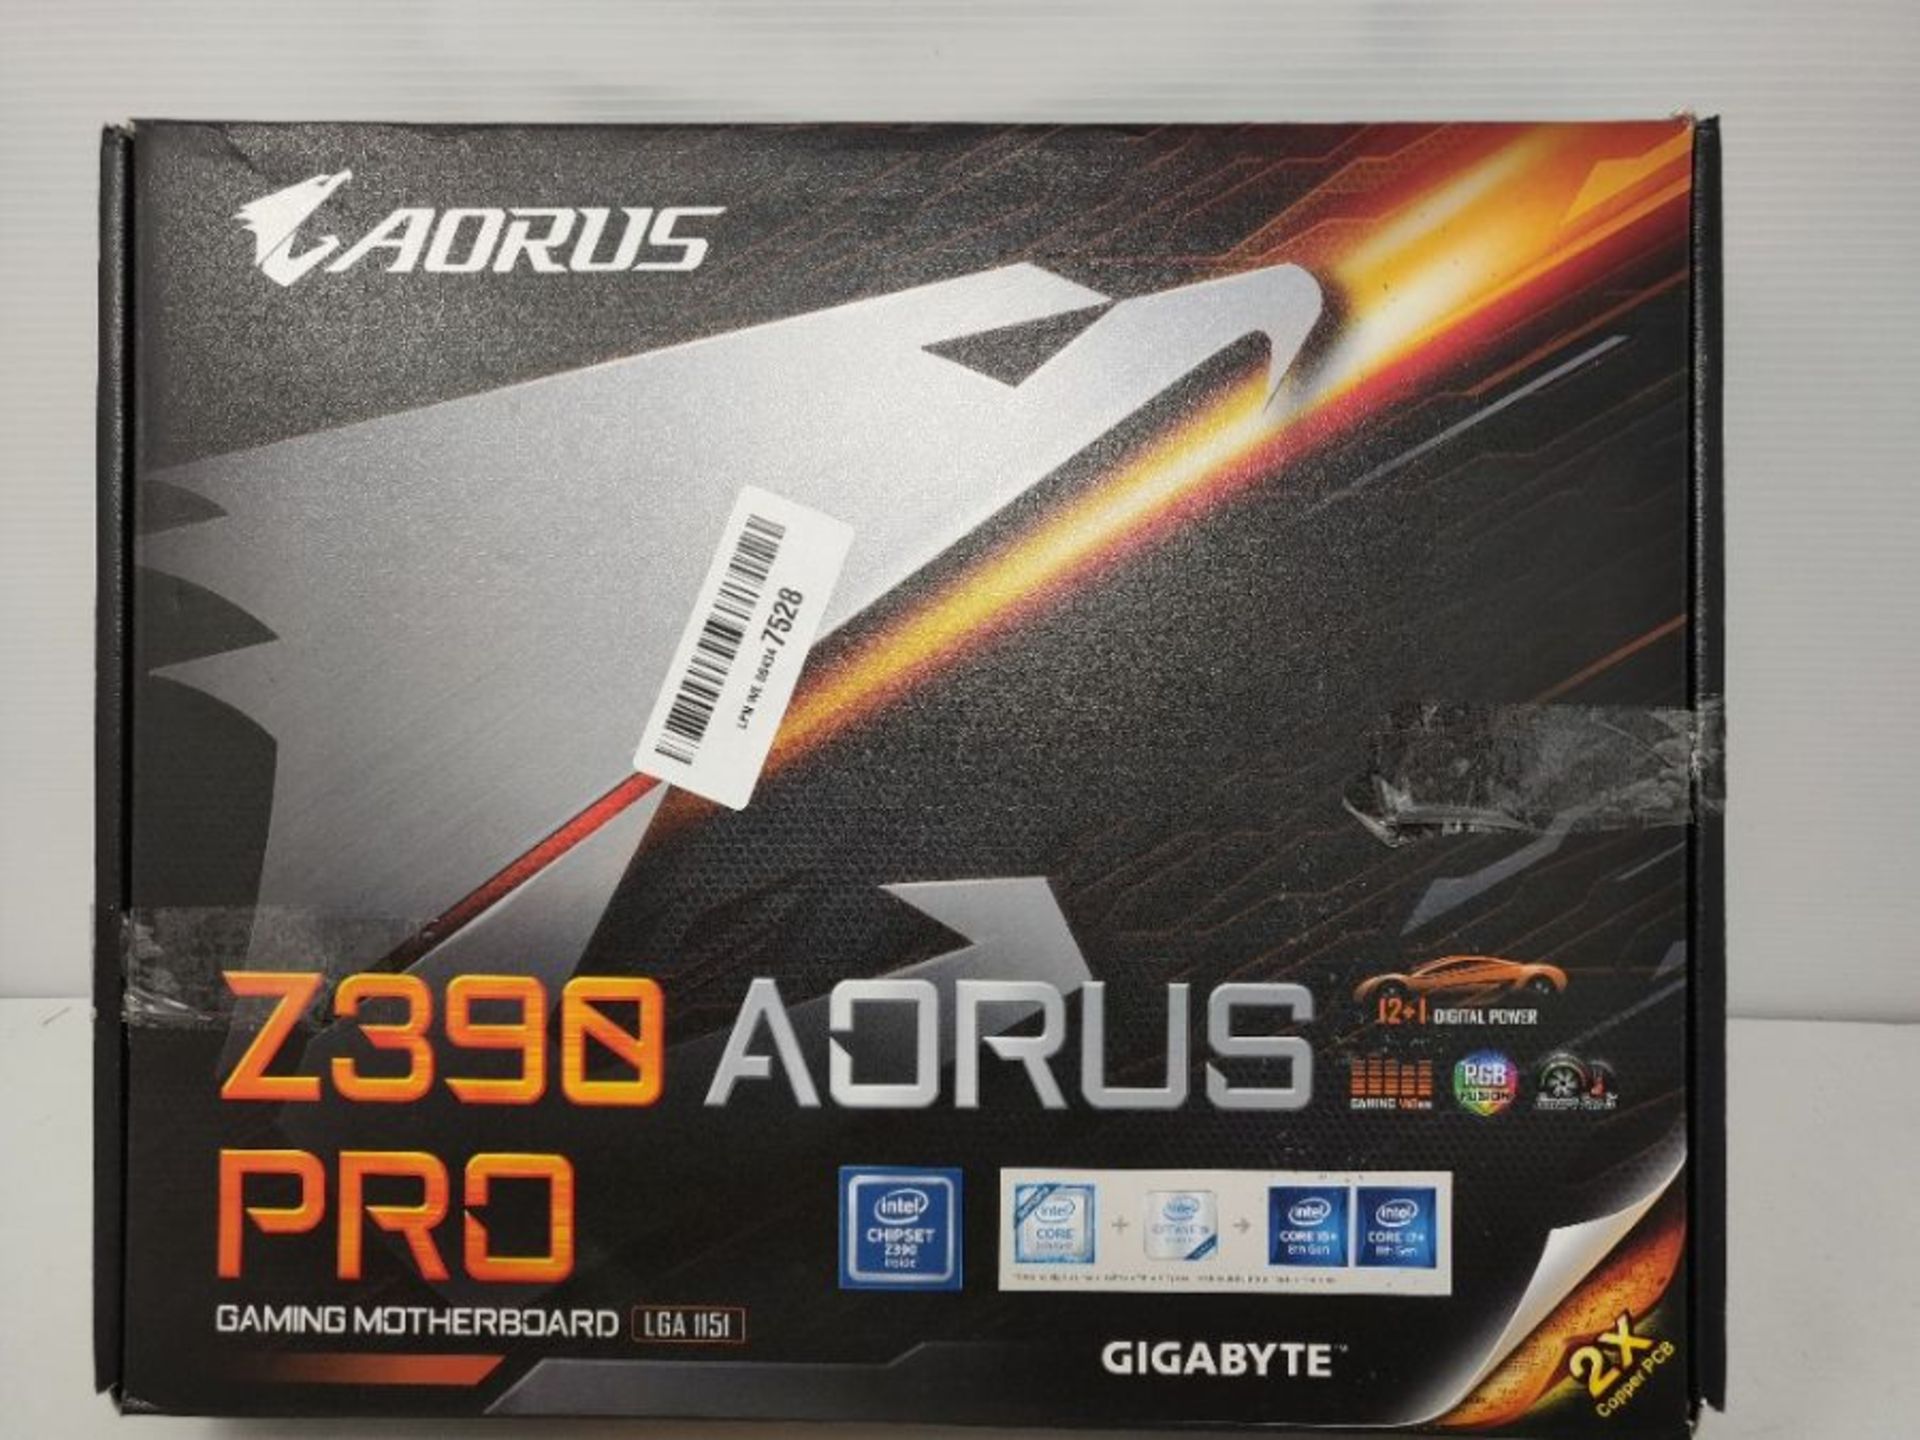 RRP £119.00 Aorus Z390 AORUS PRO (Socket 1151/Z390 Express/DDR4/S-ATA 600/ATX), Black - Image 2 of 3